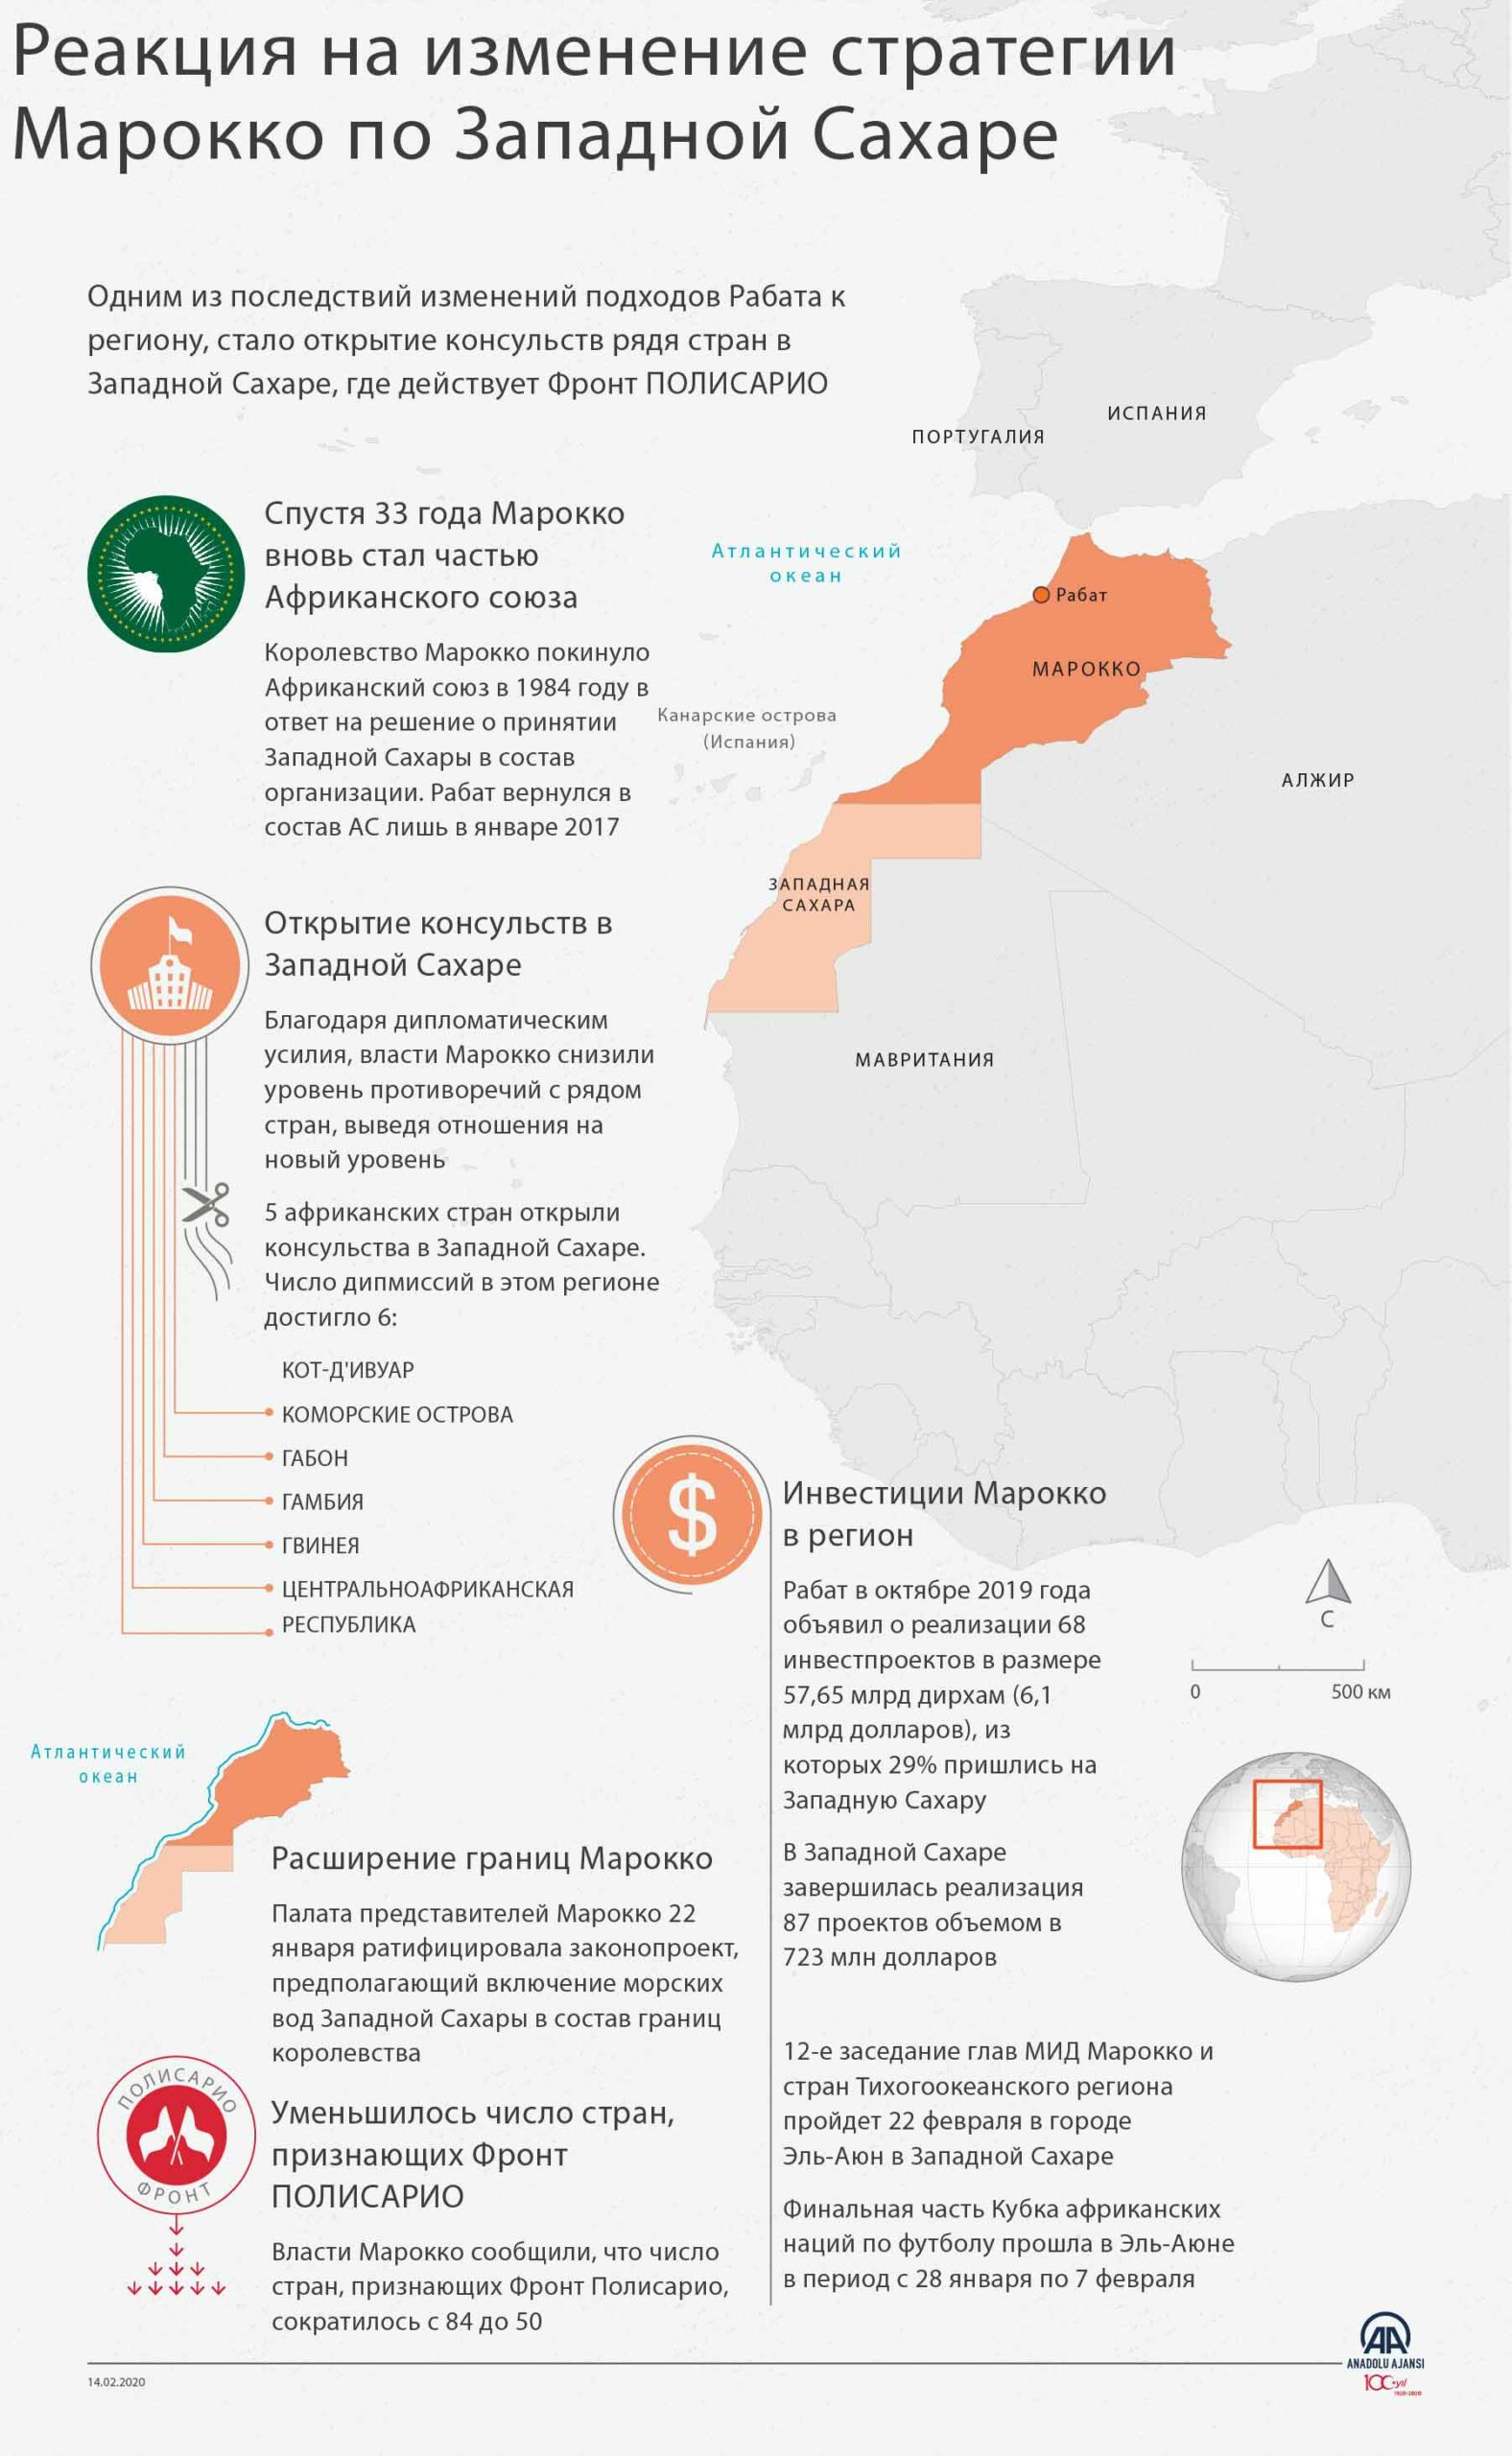 Реакция на изменение стратегии Марокко по Западной Сахаре